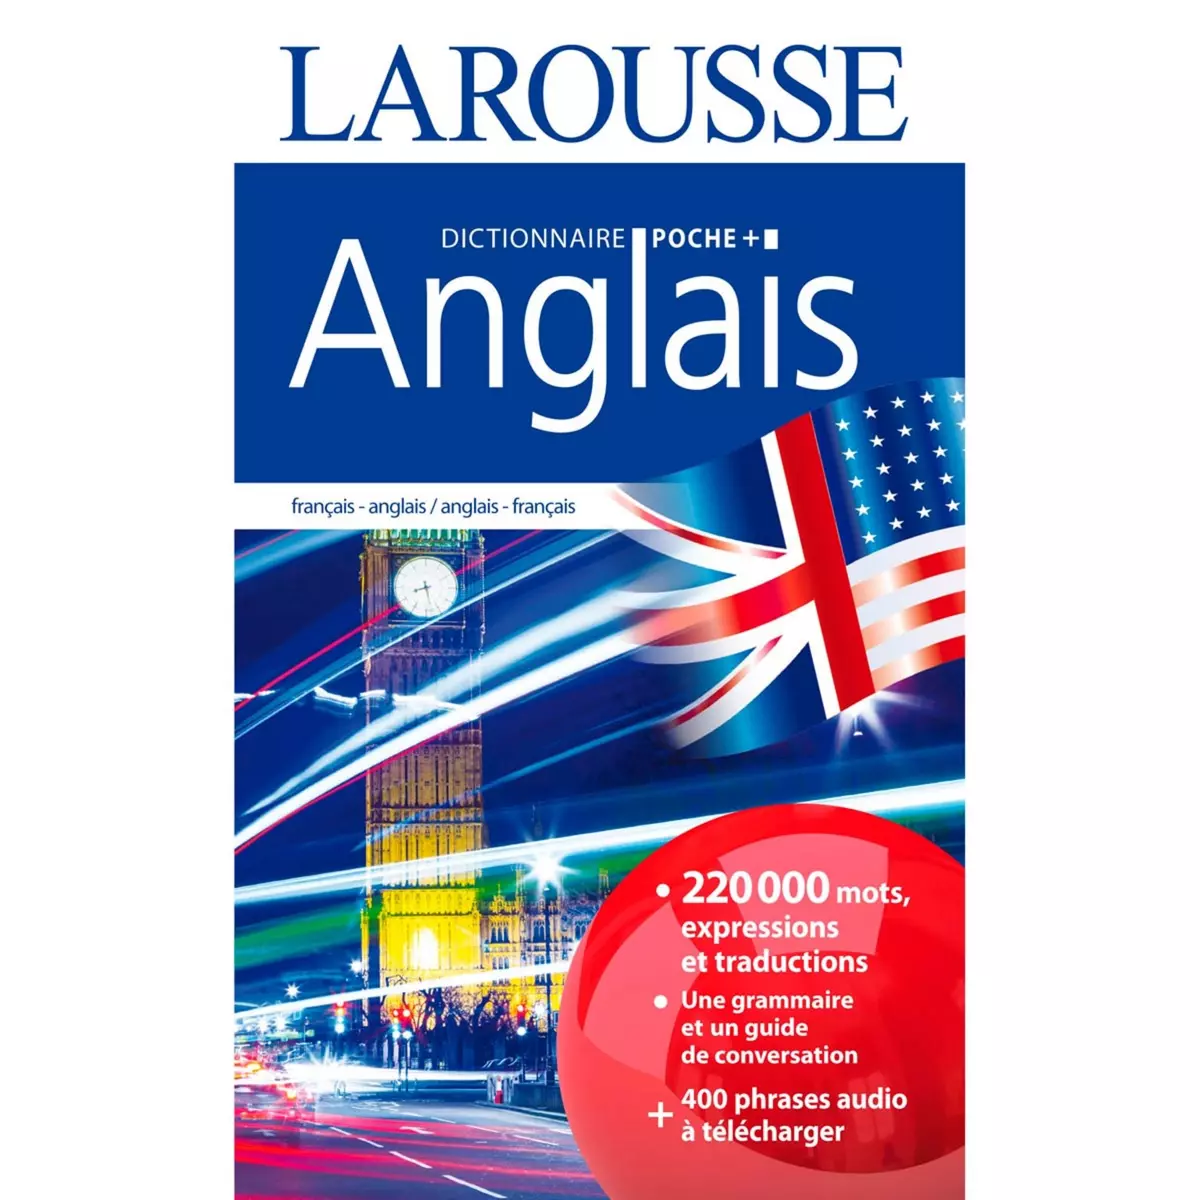 LAROUSSE Dictionnaire Larousse poche plus Anglais